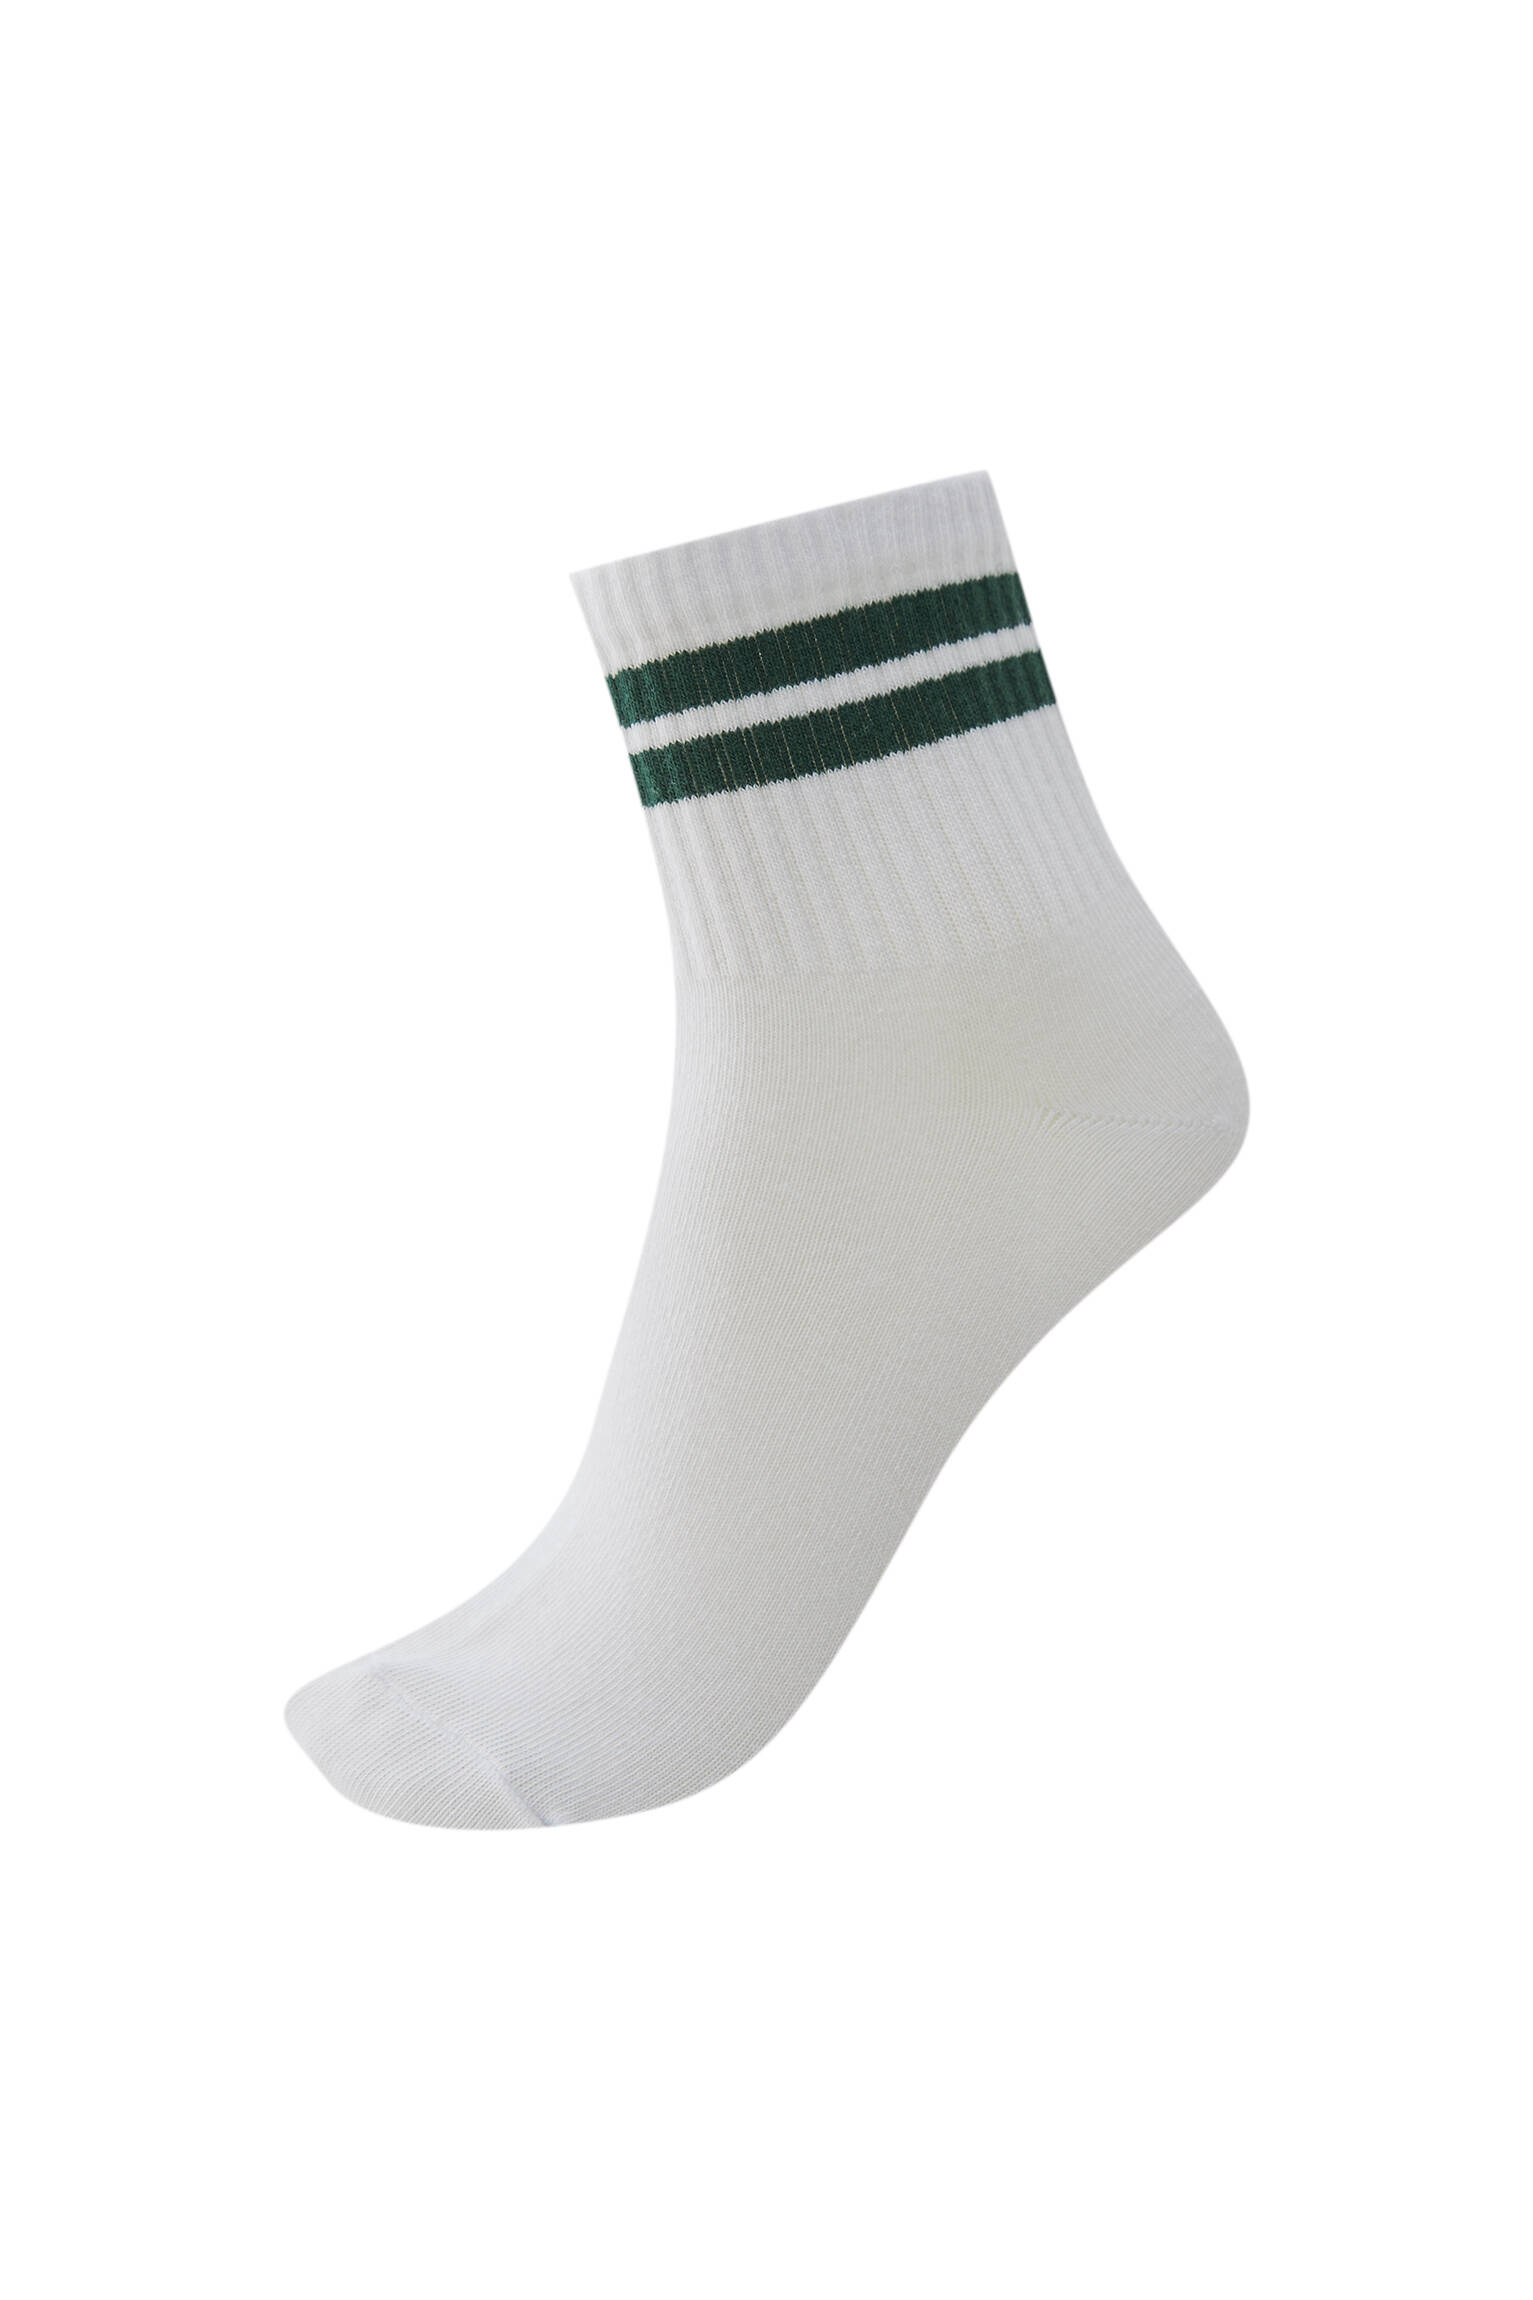 Спортивные носки с двумя полосами. Органический хлопок (не менее 75%). ЗЕЛЕНЫЙ Pull & Bear